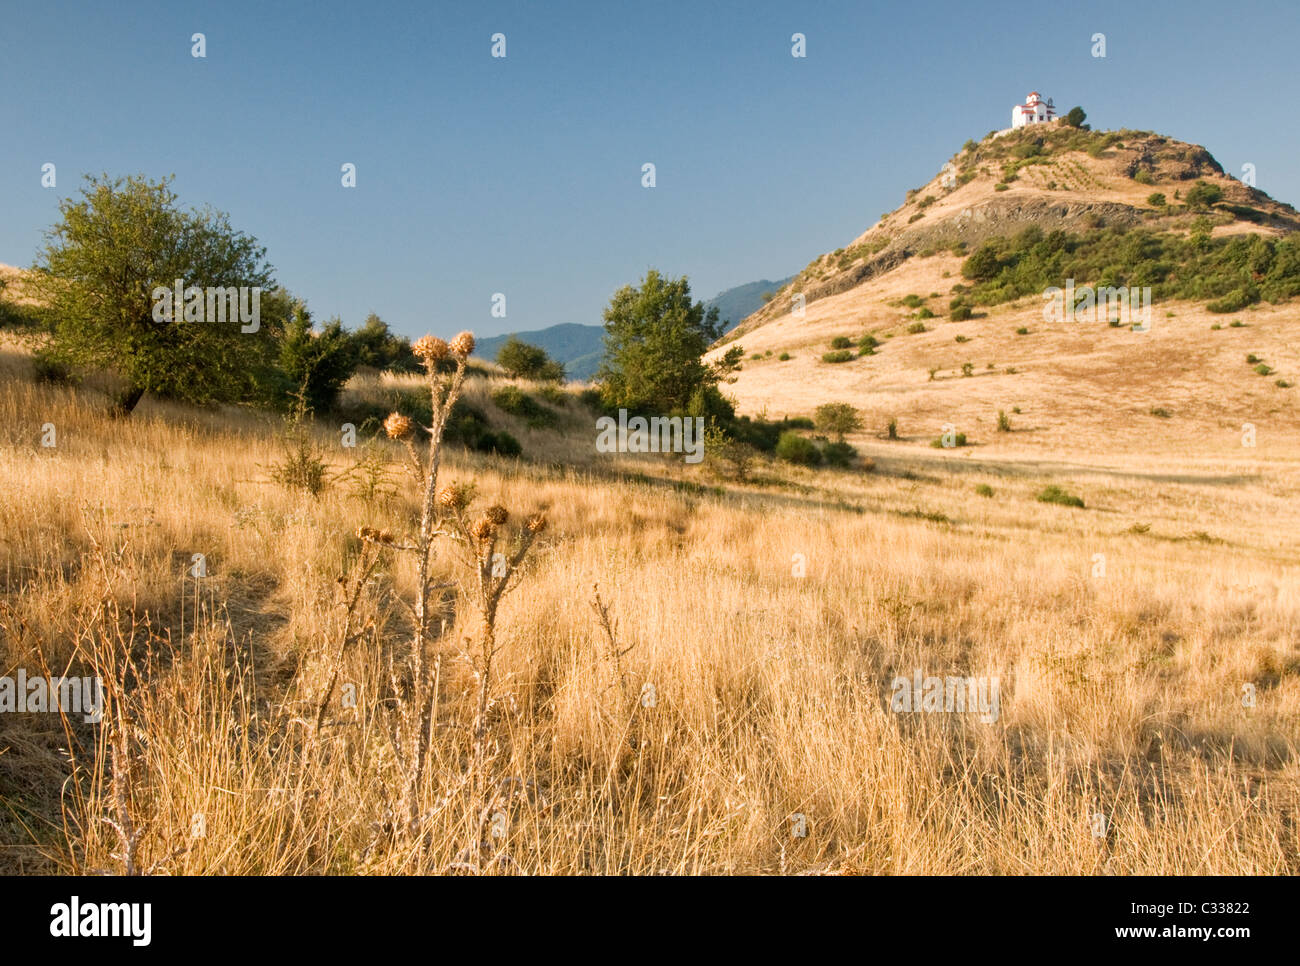 Idyllische traditionelle griechische Kirche auf Hügel in der Nähe von Trigona, Trigona, Ebene von Thessalien, Griechenland, Europa Stockfoto